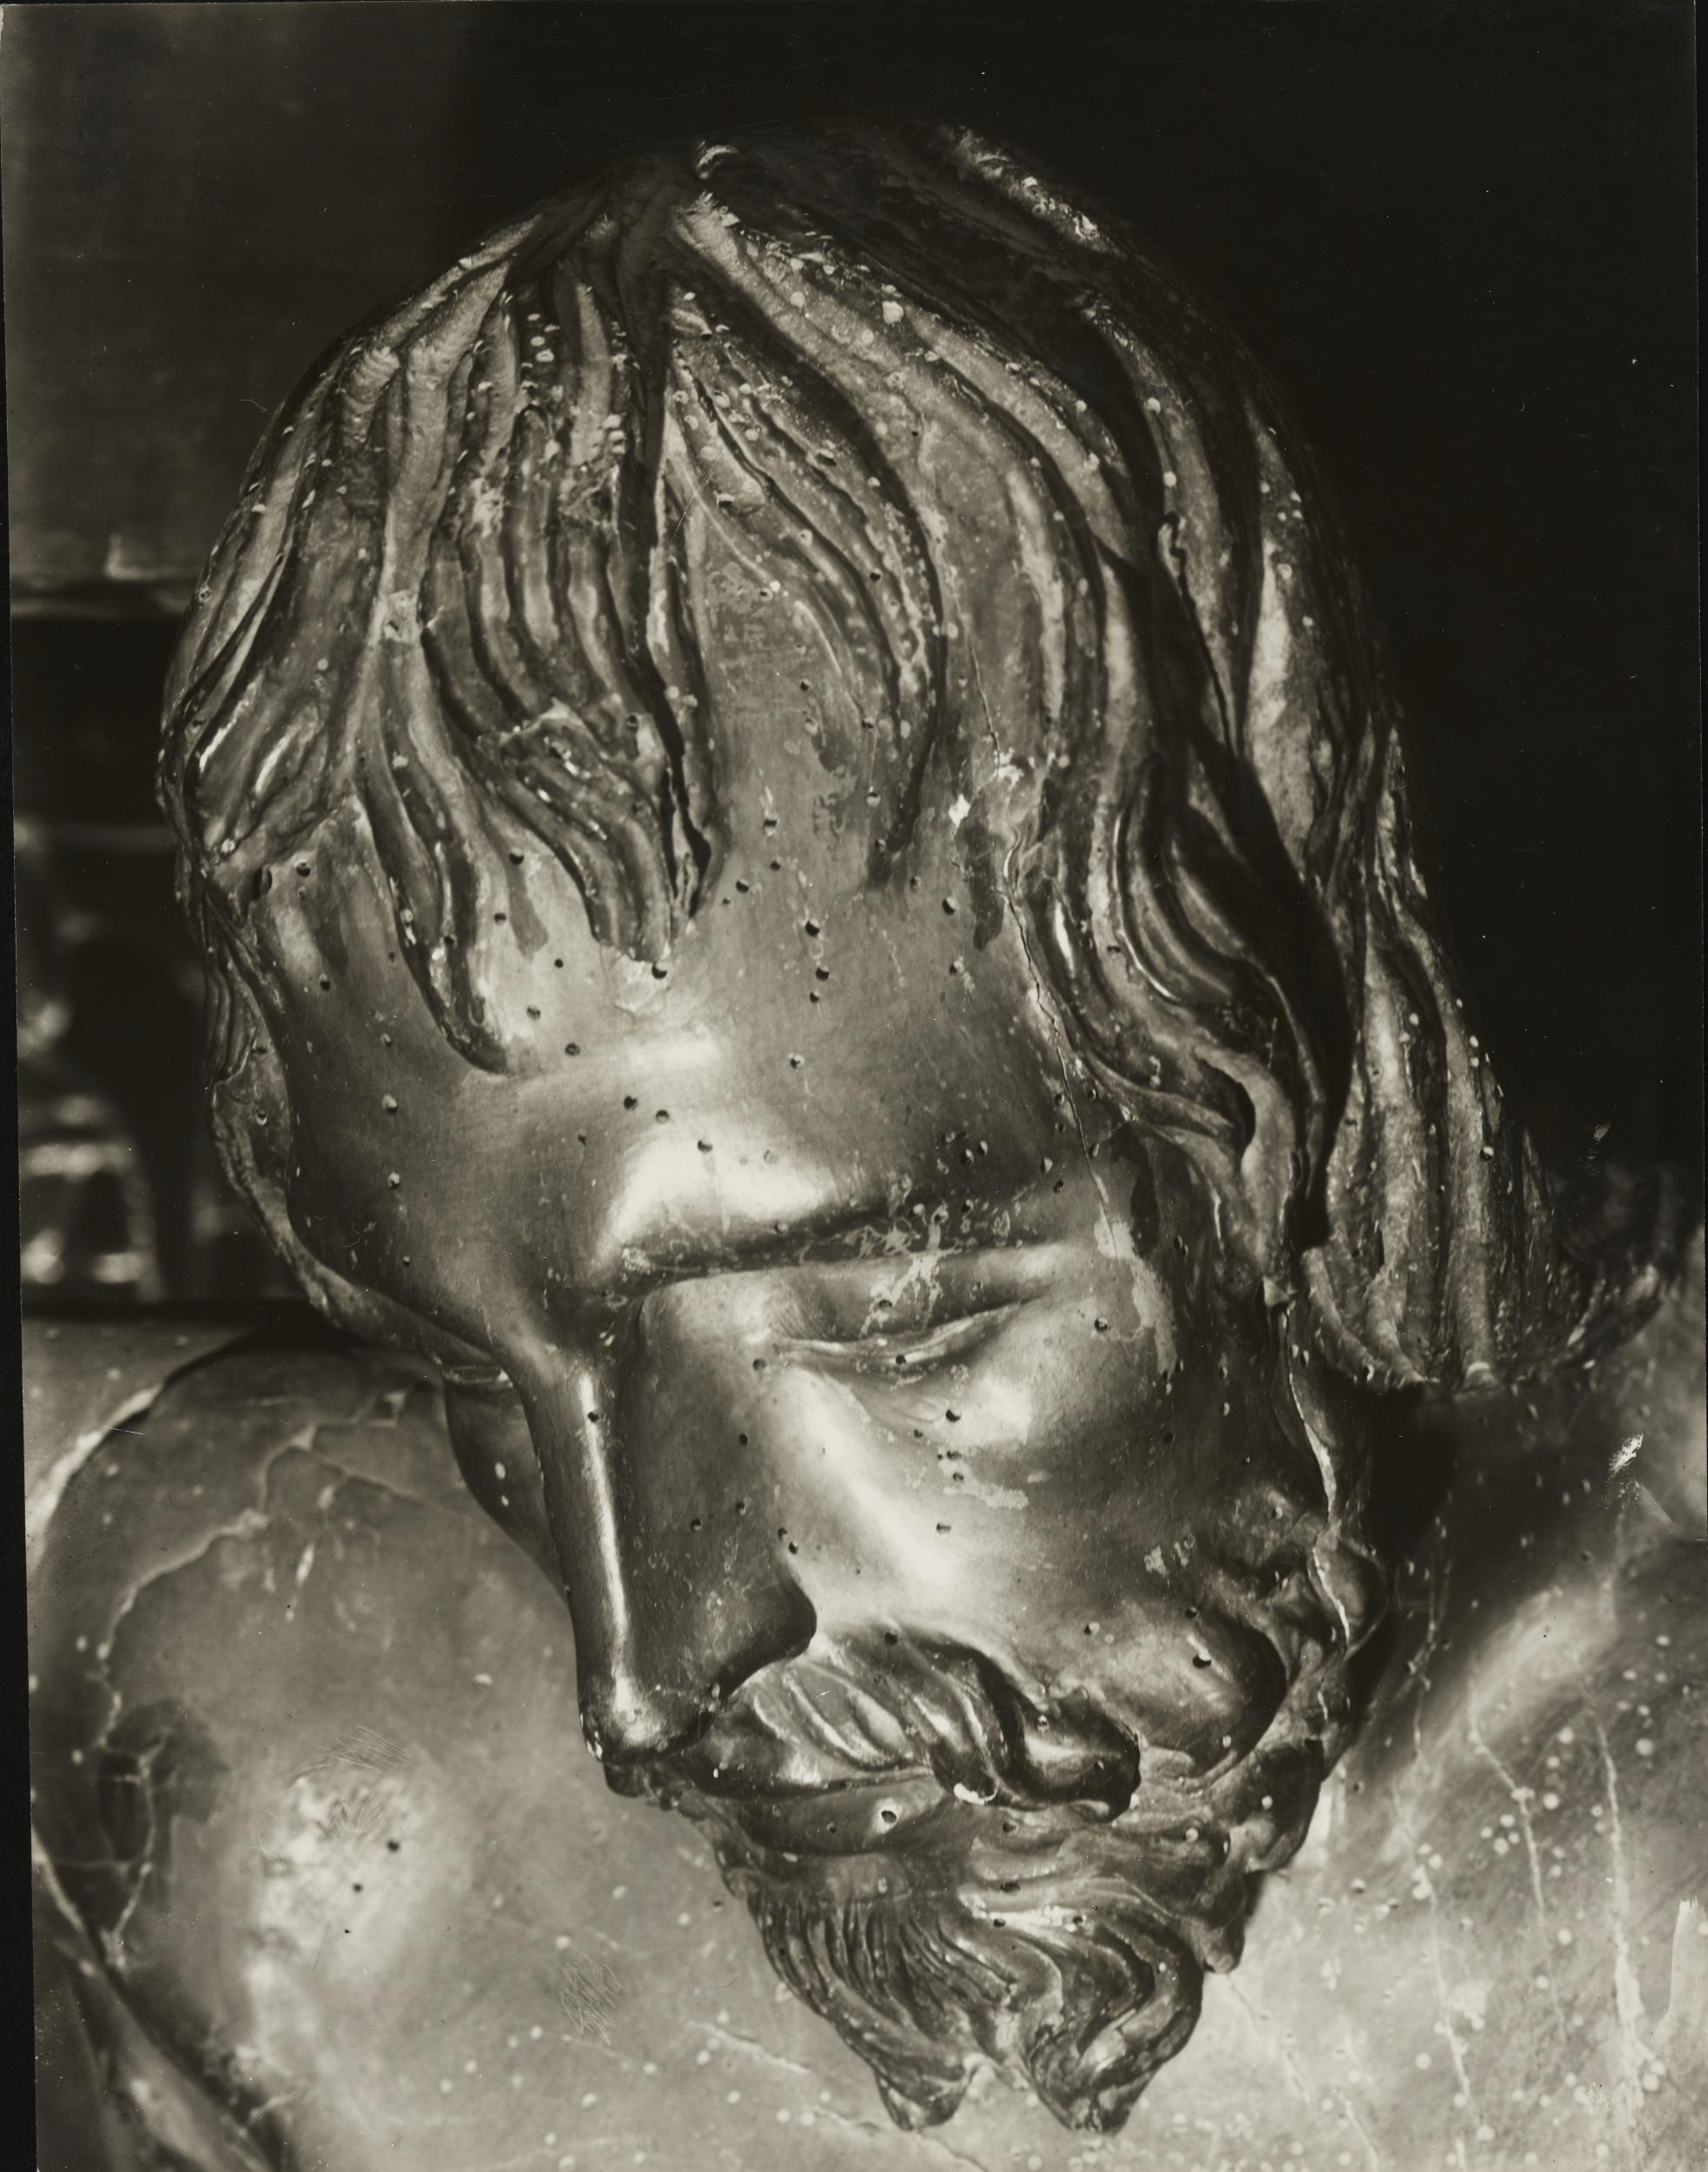 Gino Malenotti, Firenze - Basilica di Santa Croce, Crocifisso, particolare, 1931- 1938, gelatina ai sali d'argento, MPI318775